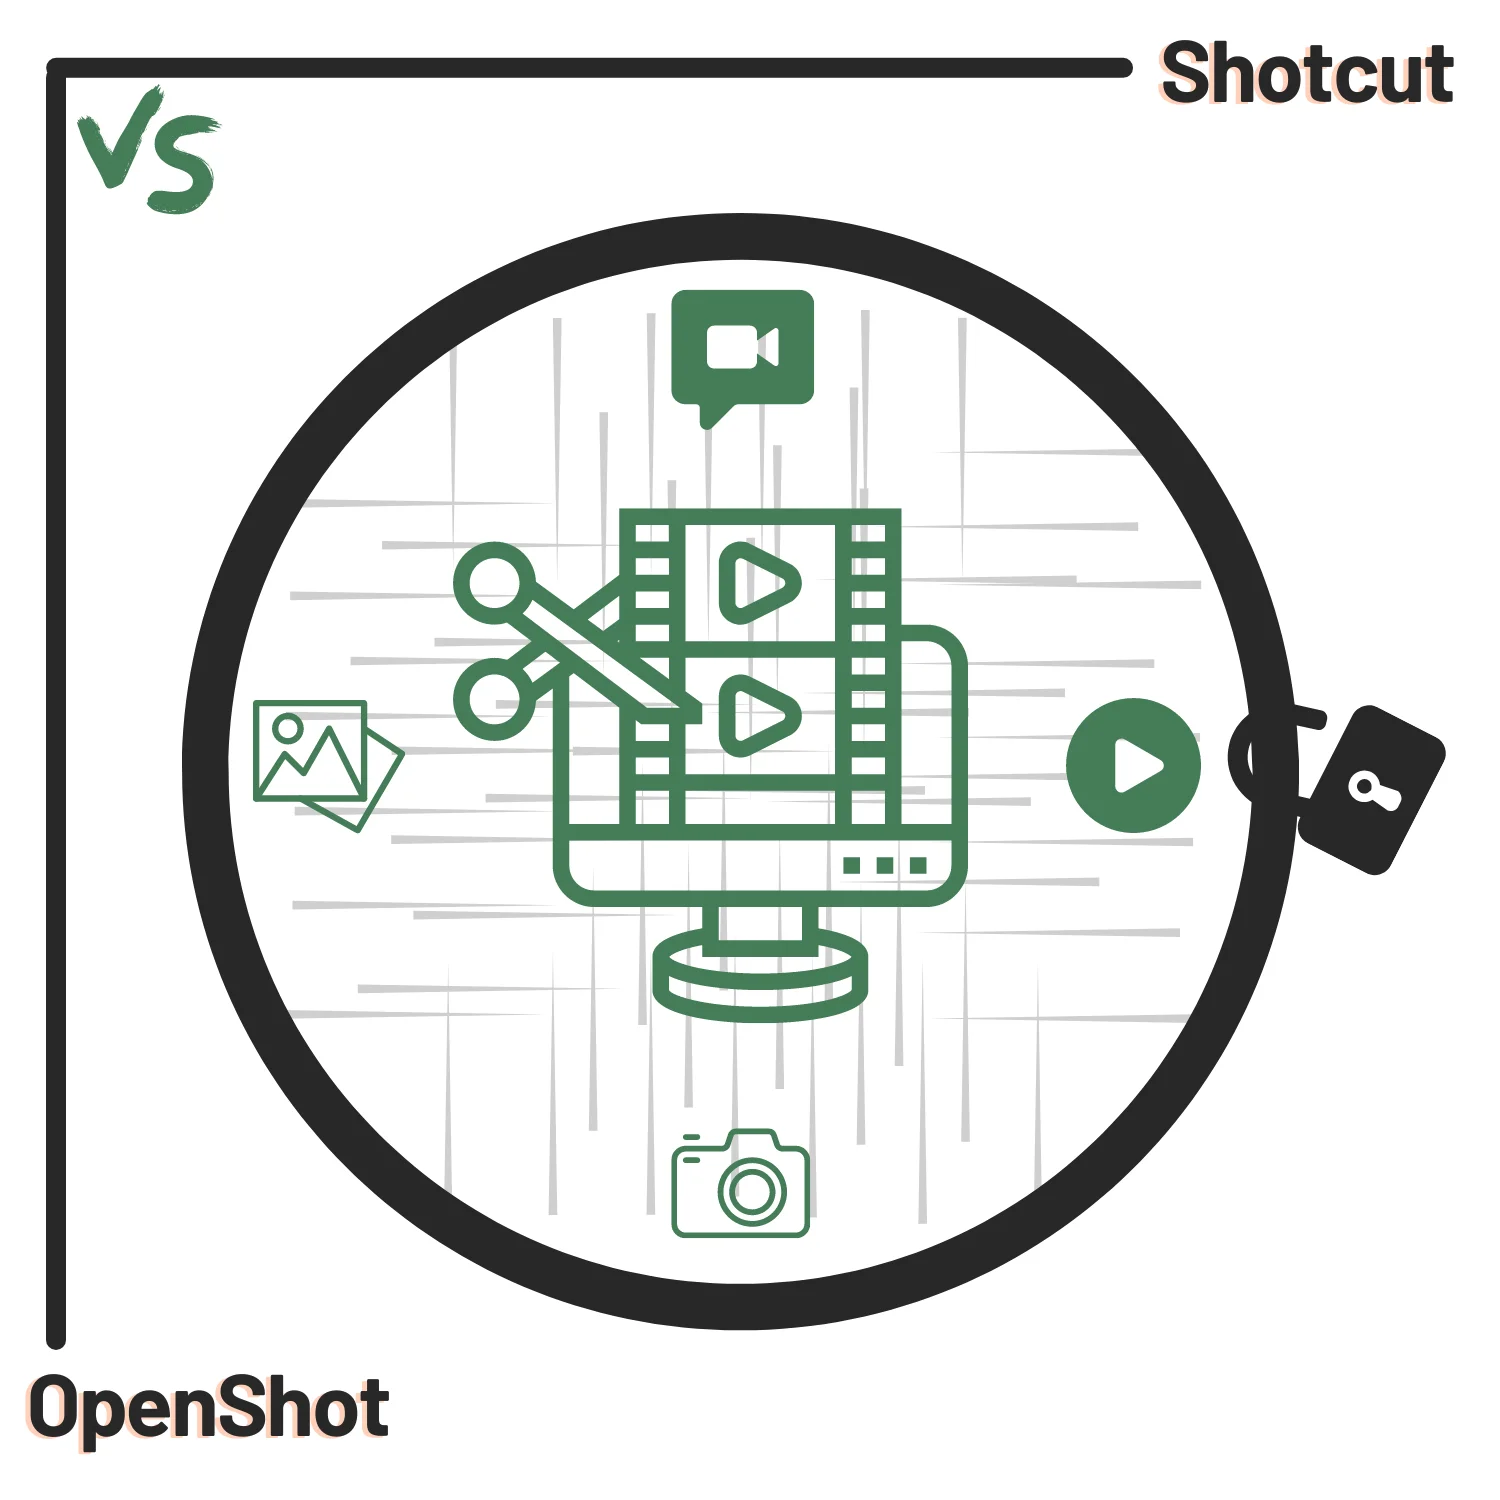 Shotcut vs OpenShot